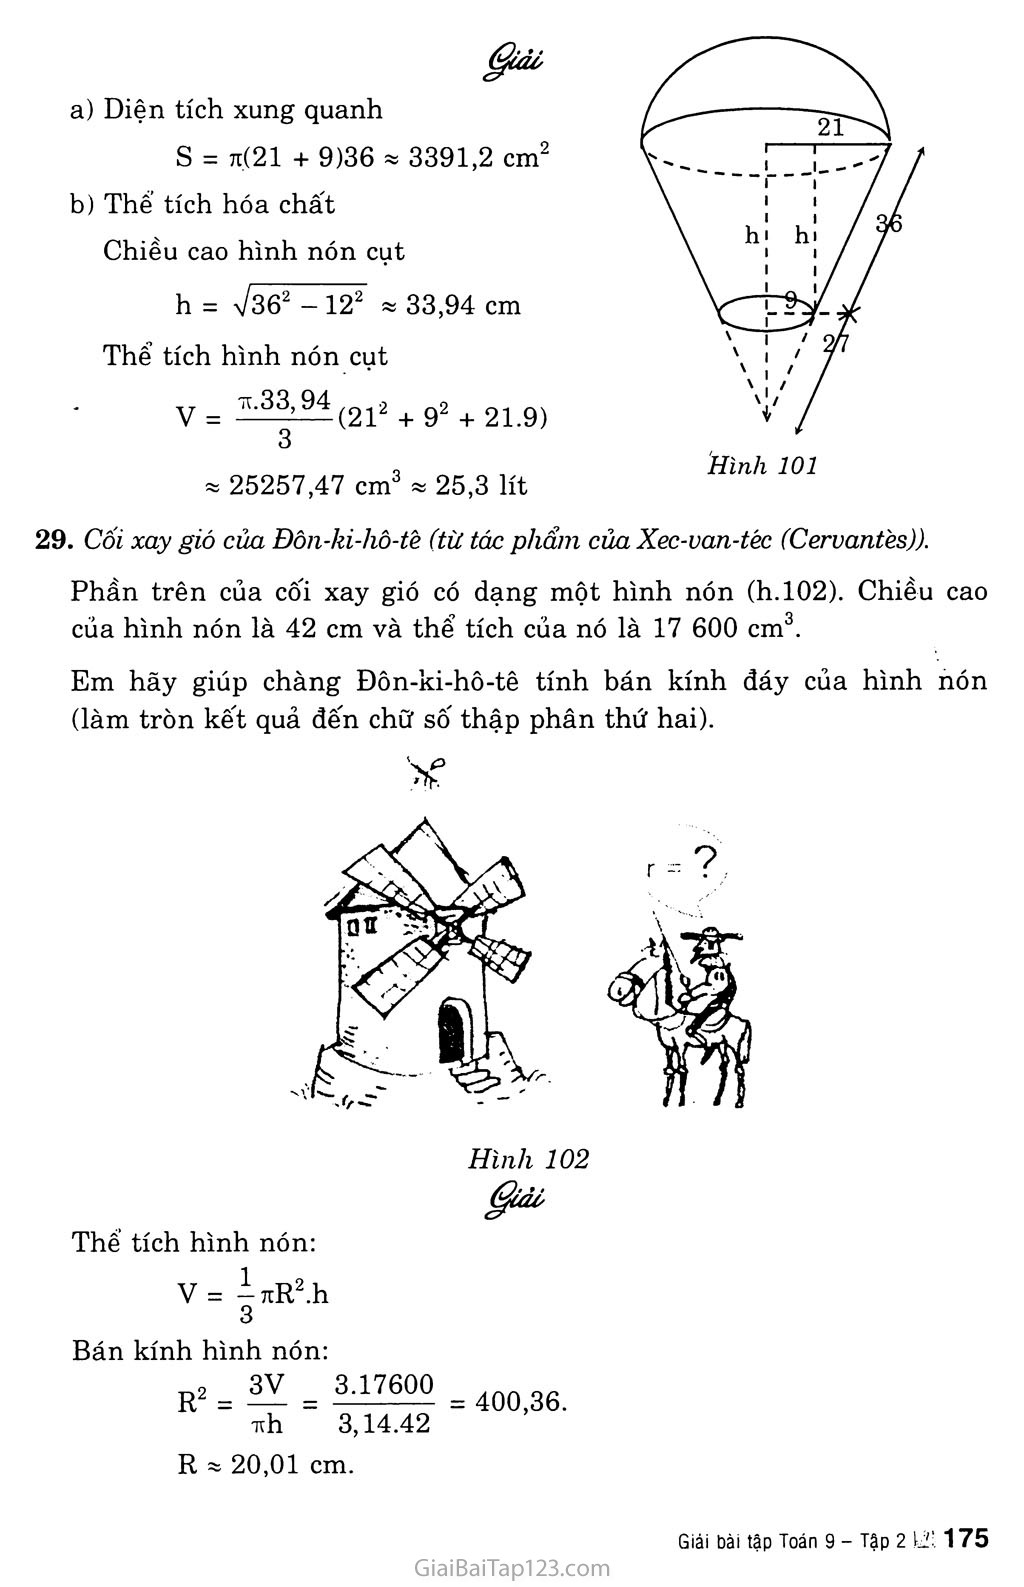 Bài 2. Hình nón - Hình nón cụt - Diện tích xung quanh và thể tích của hình nón, hình nón cụt trang 8